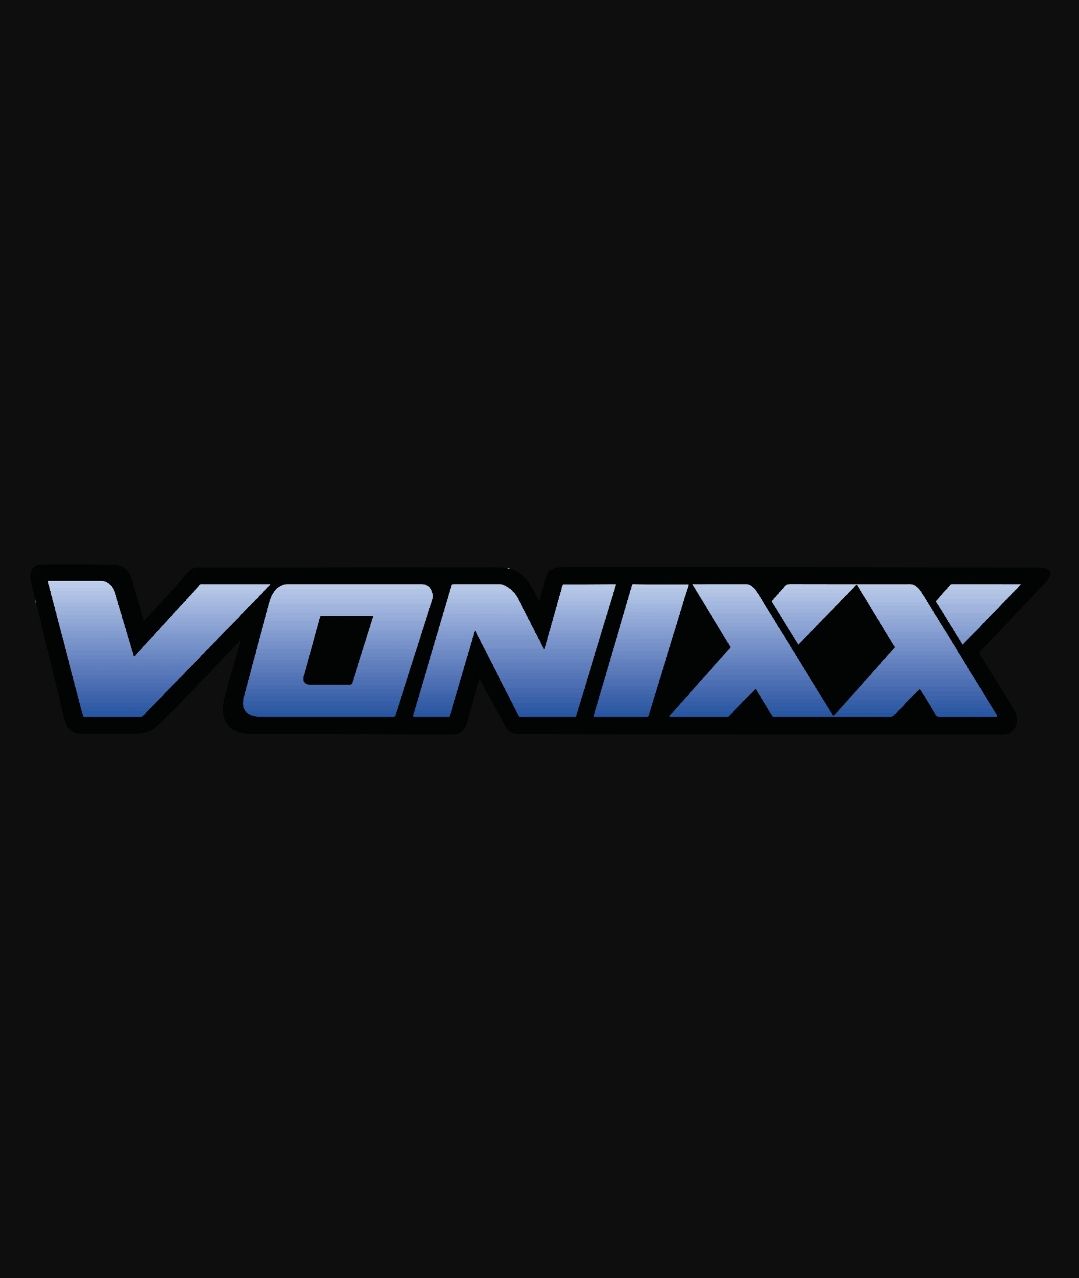 Aplicador de espuma Vonixx pratico bom leve melhor original